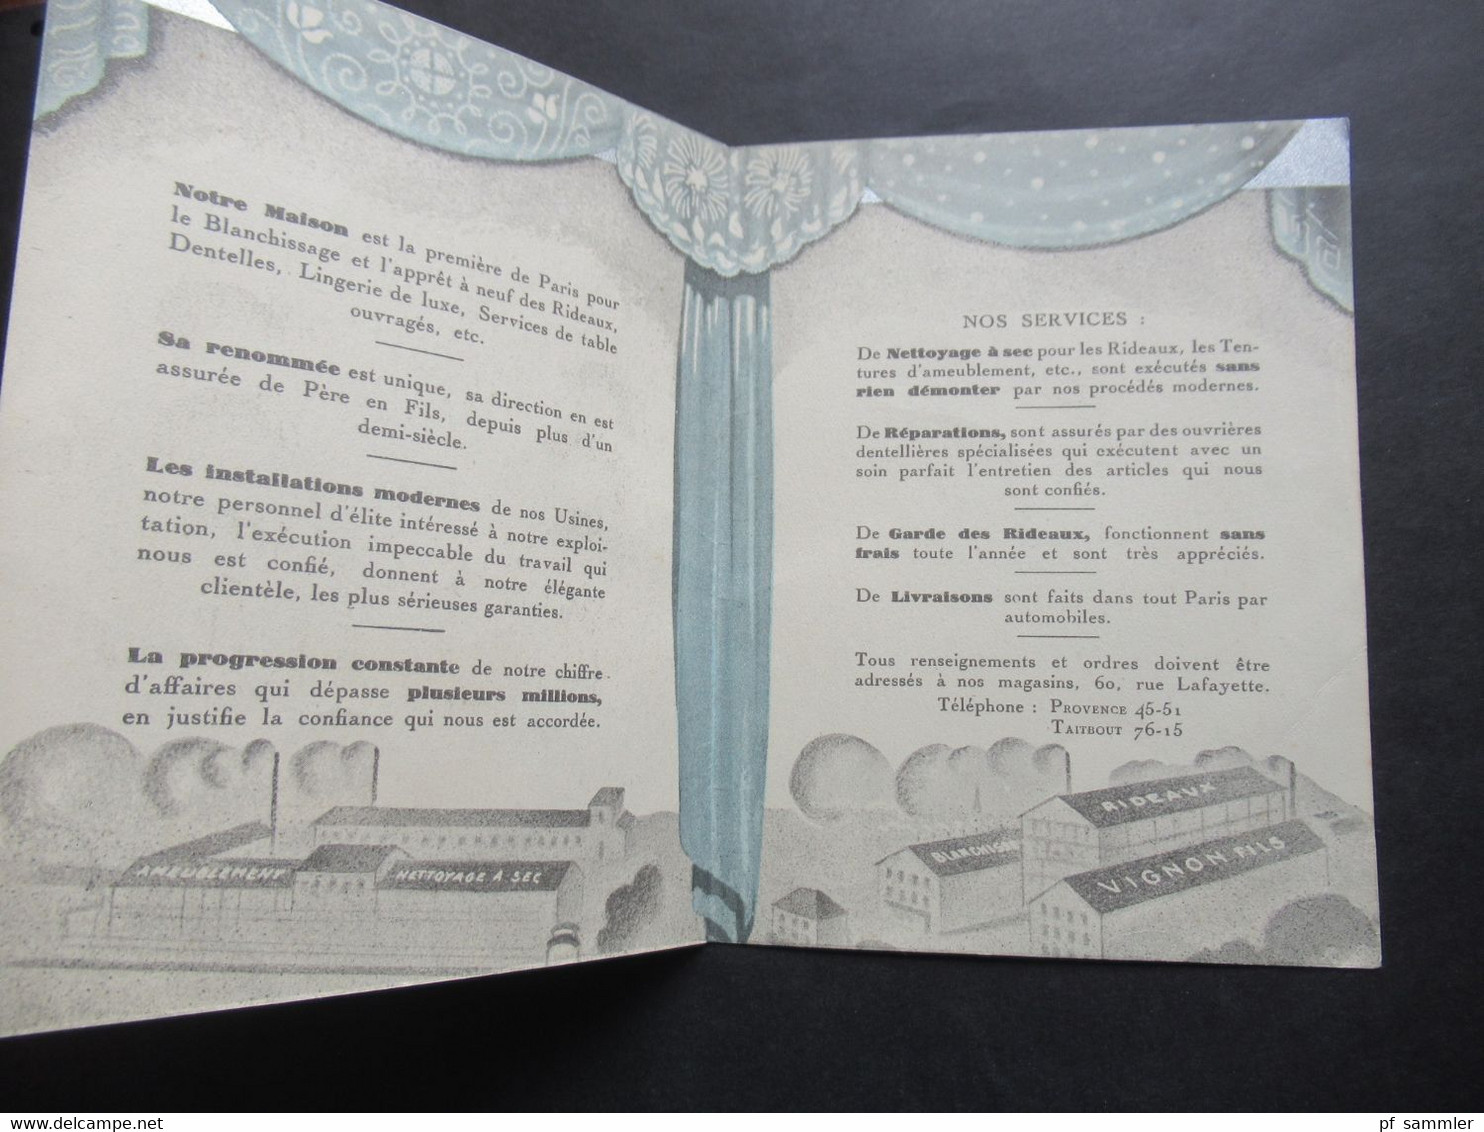 Sehr dekorative Werbekarte Art Déco ca.1920er Jahre Vignon Fils Paris Blanchisserie Speciale de Rideaux